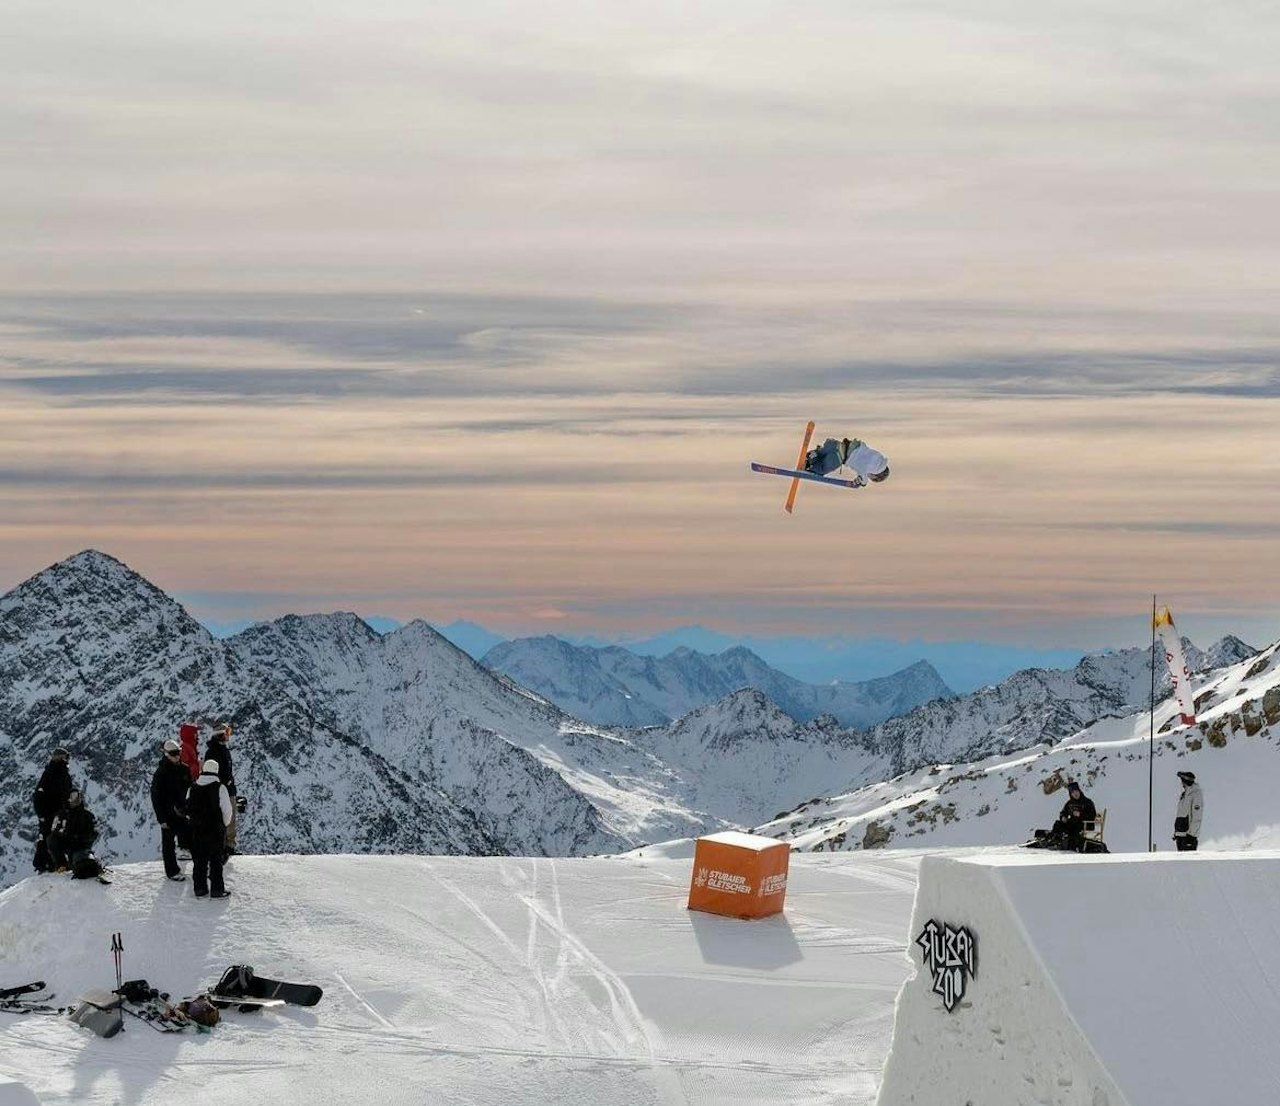 KLAR FOR SLOPESTYLE: Etter Big air seieren i Chur, er Birk Ruud nå klar for slopestyle. Foto: Freeskilandslaget